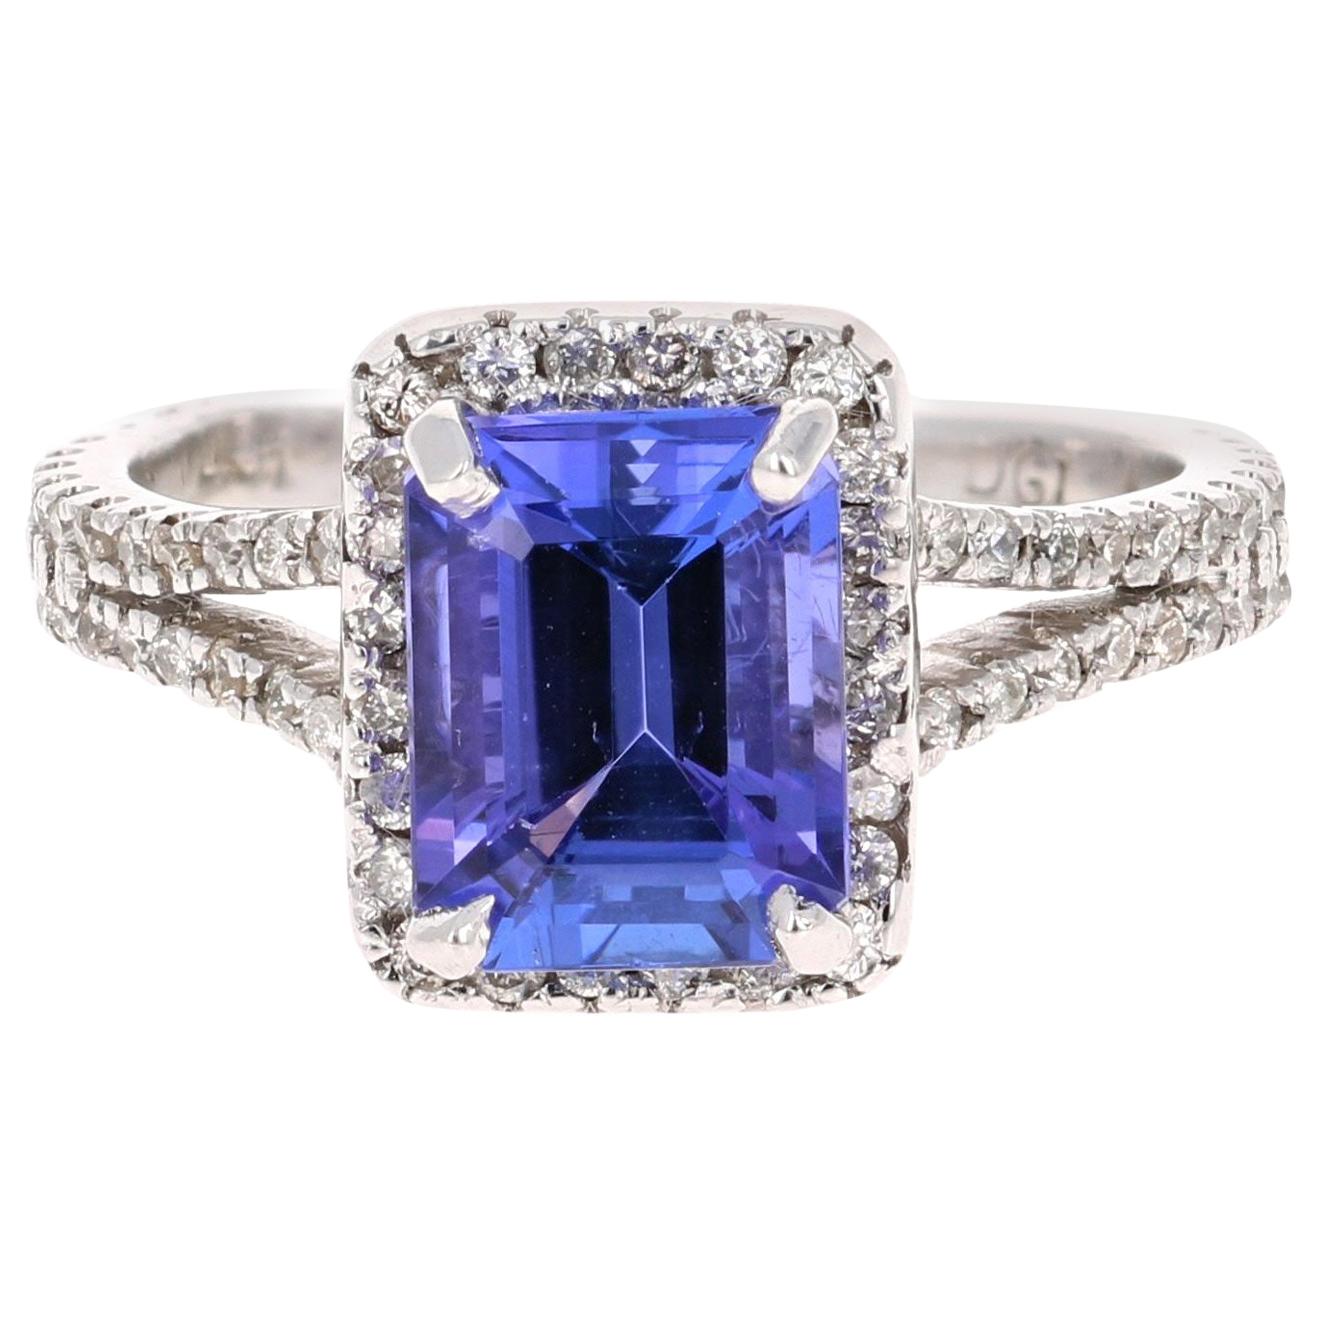 2.65 Carat Emerald Cut Tanzanite Diamond 14 Karat White Gold Engagement Ring